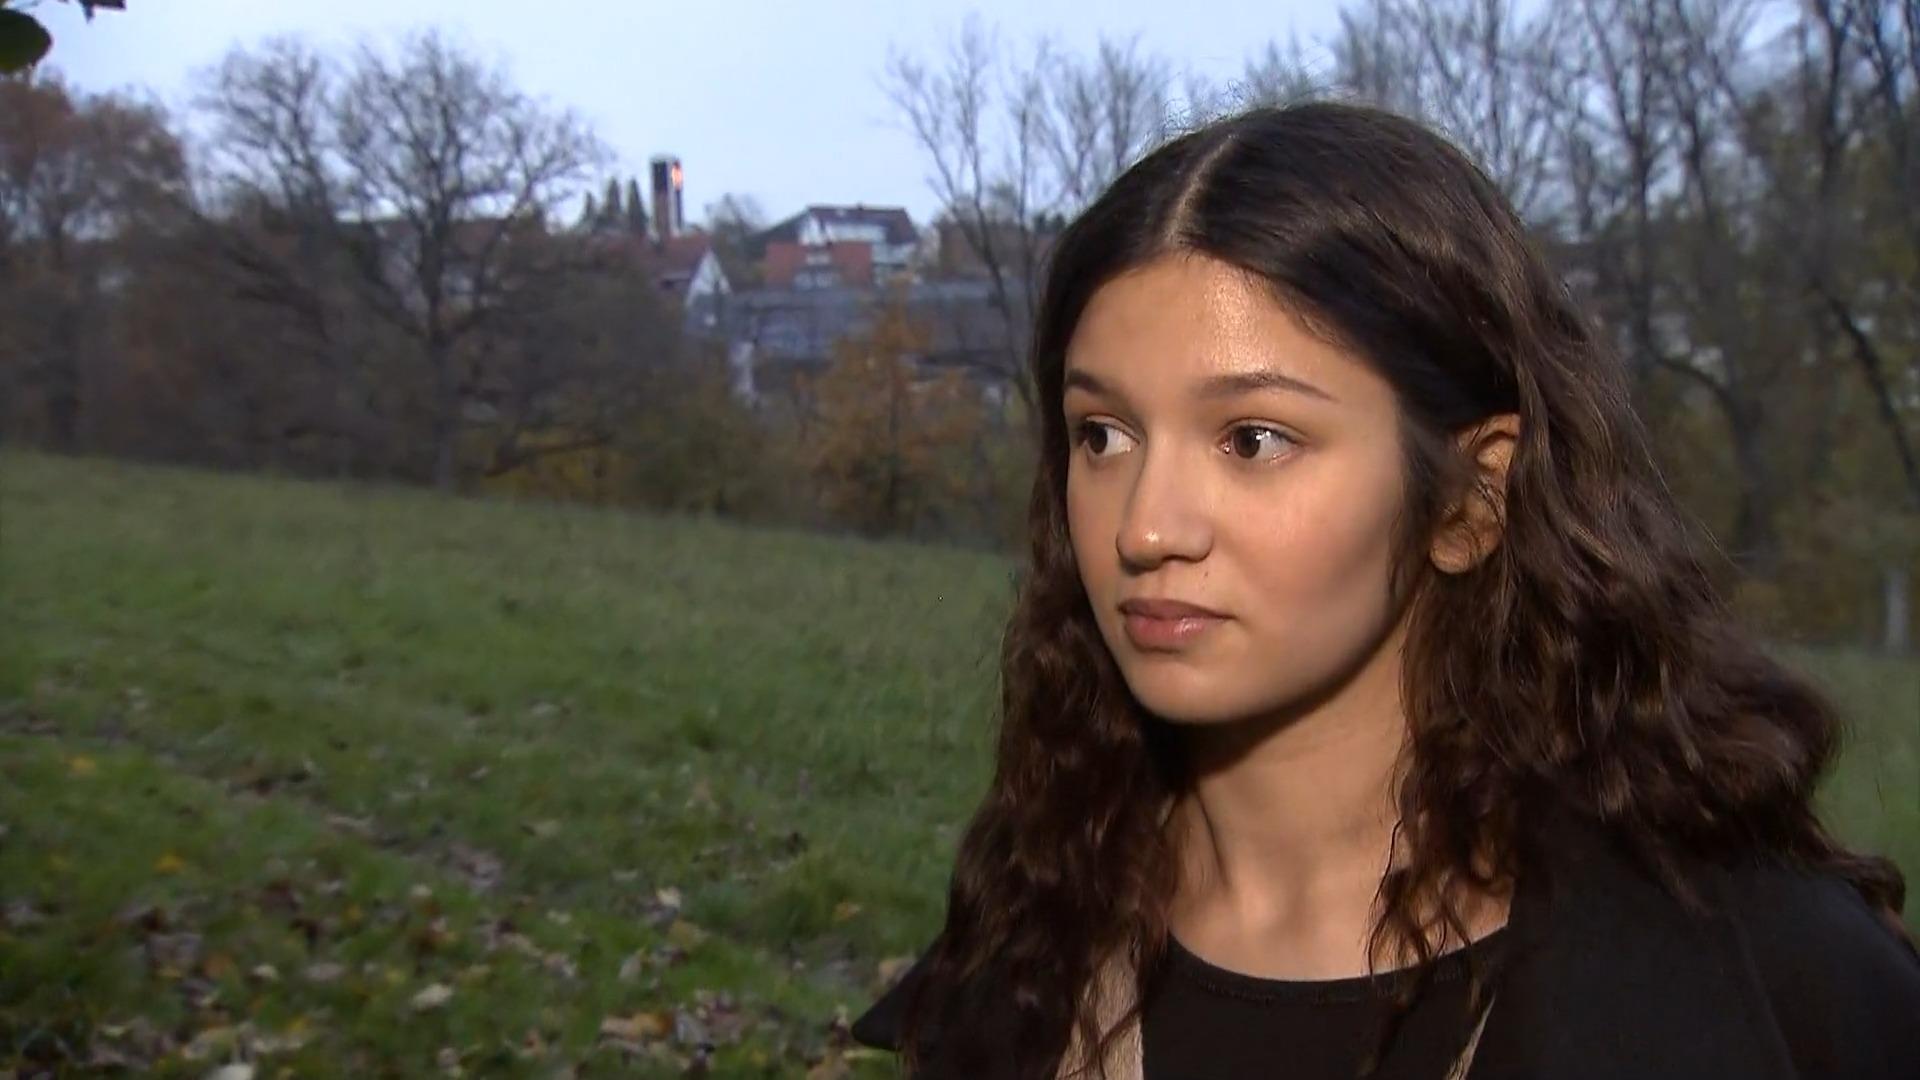 "Ich wurde hierhin entführt und mehrfach vergewaltigt" Verbrechensopfer Selin: Exklusives RTL-Interview